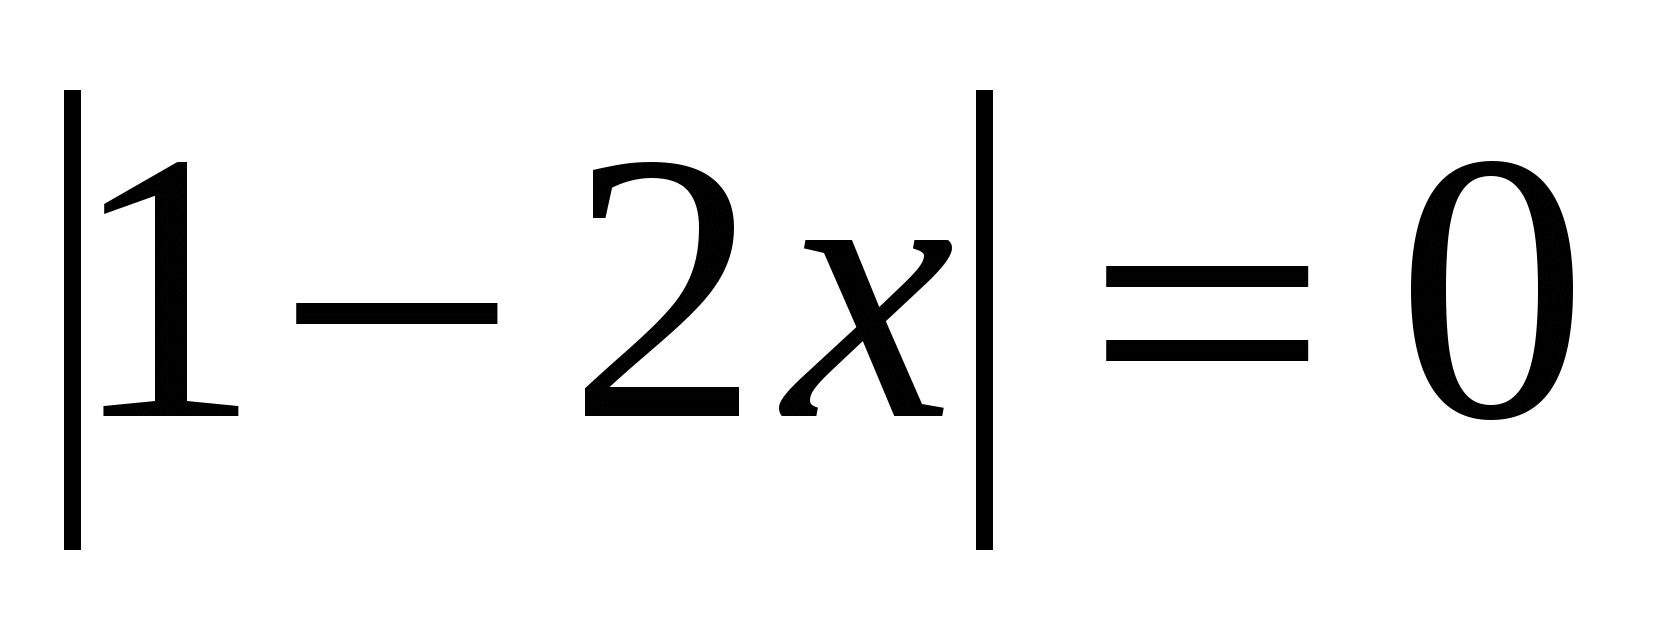 Конспект урока по математике на тему: Линейное уравнение с одной переменной, содержащих переменную под знаком модуля